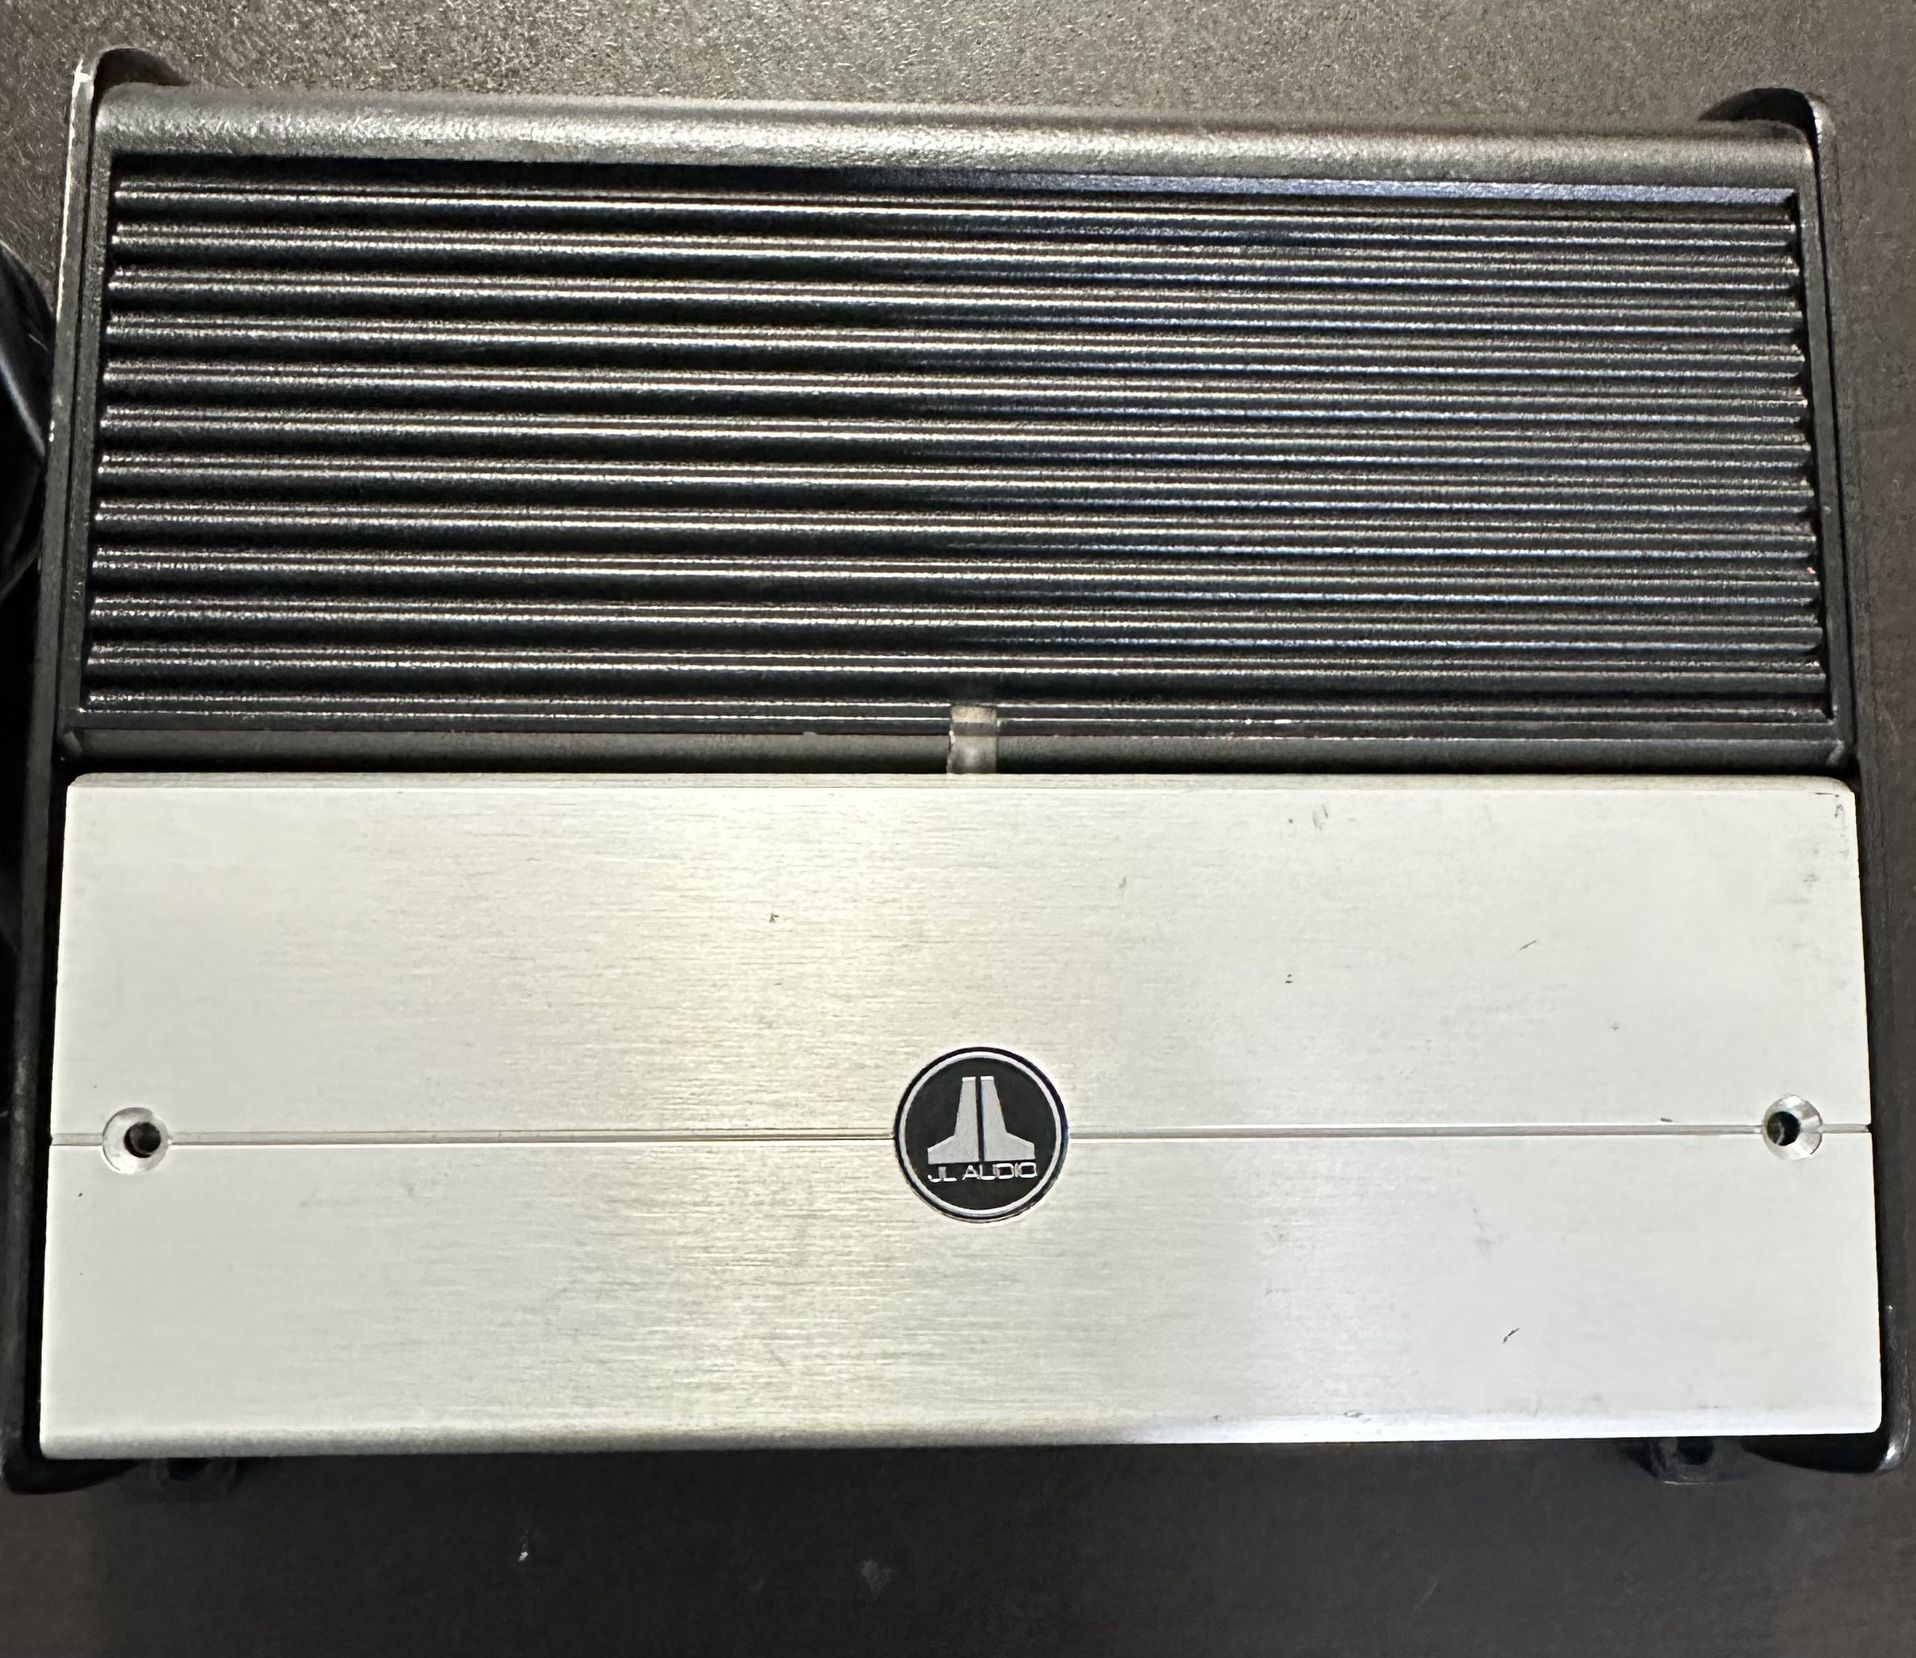 JL Audio XD600/1 Mono subwoofer amplifier